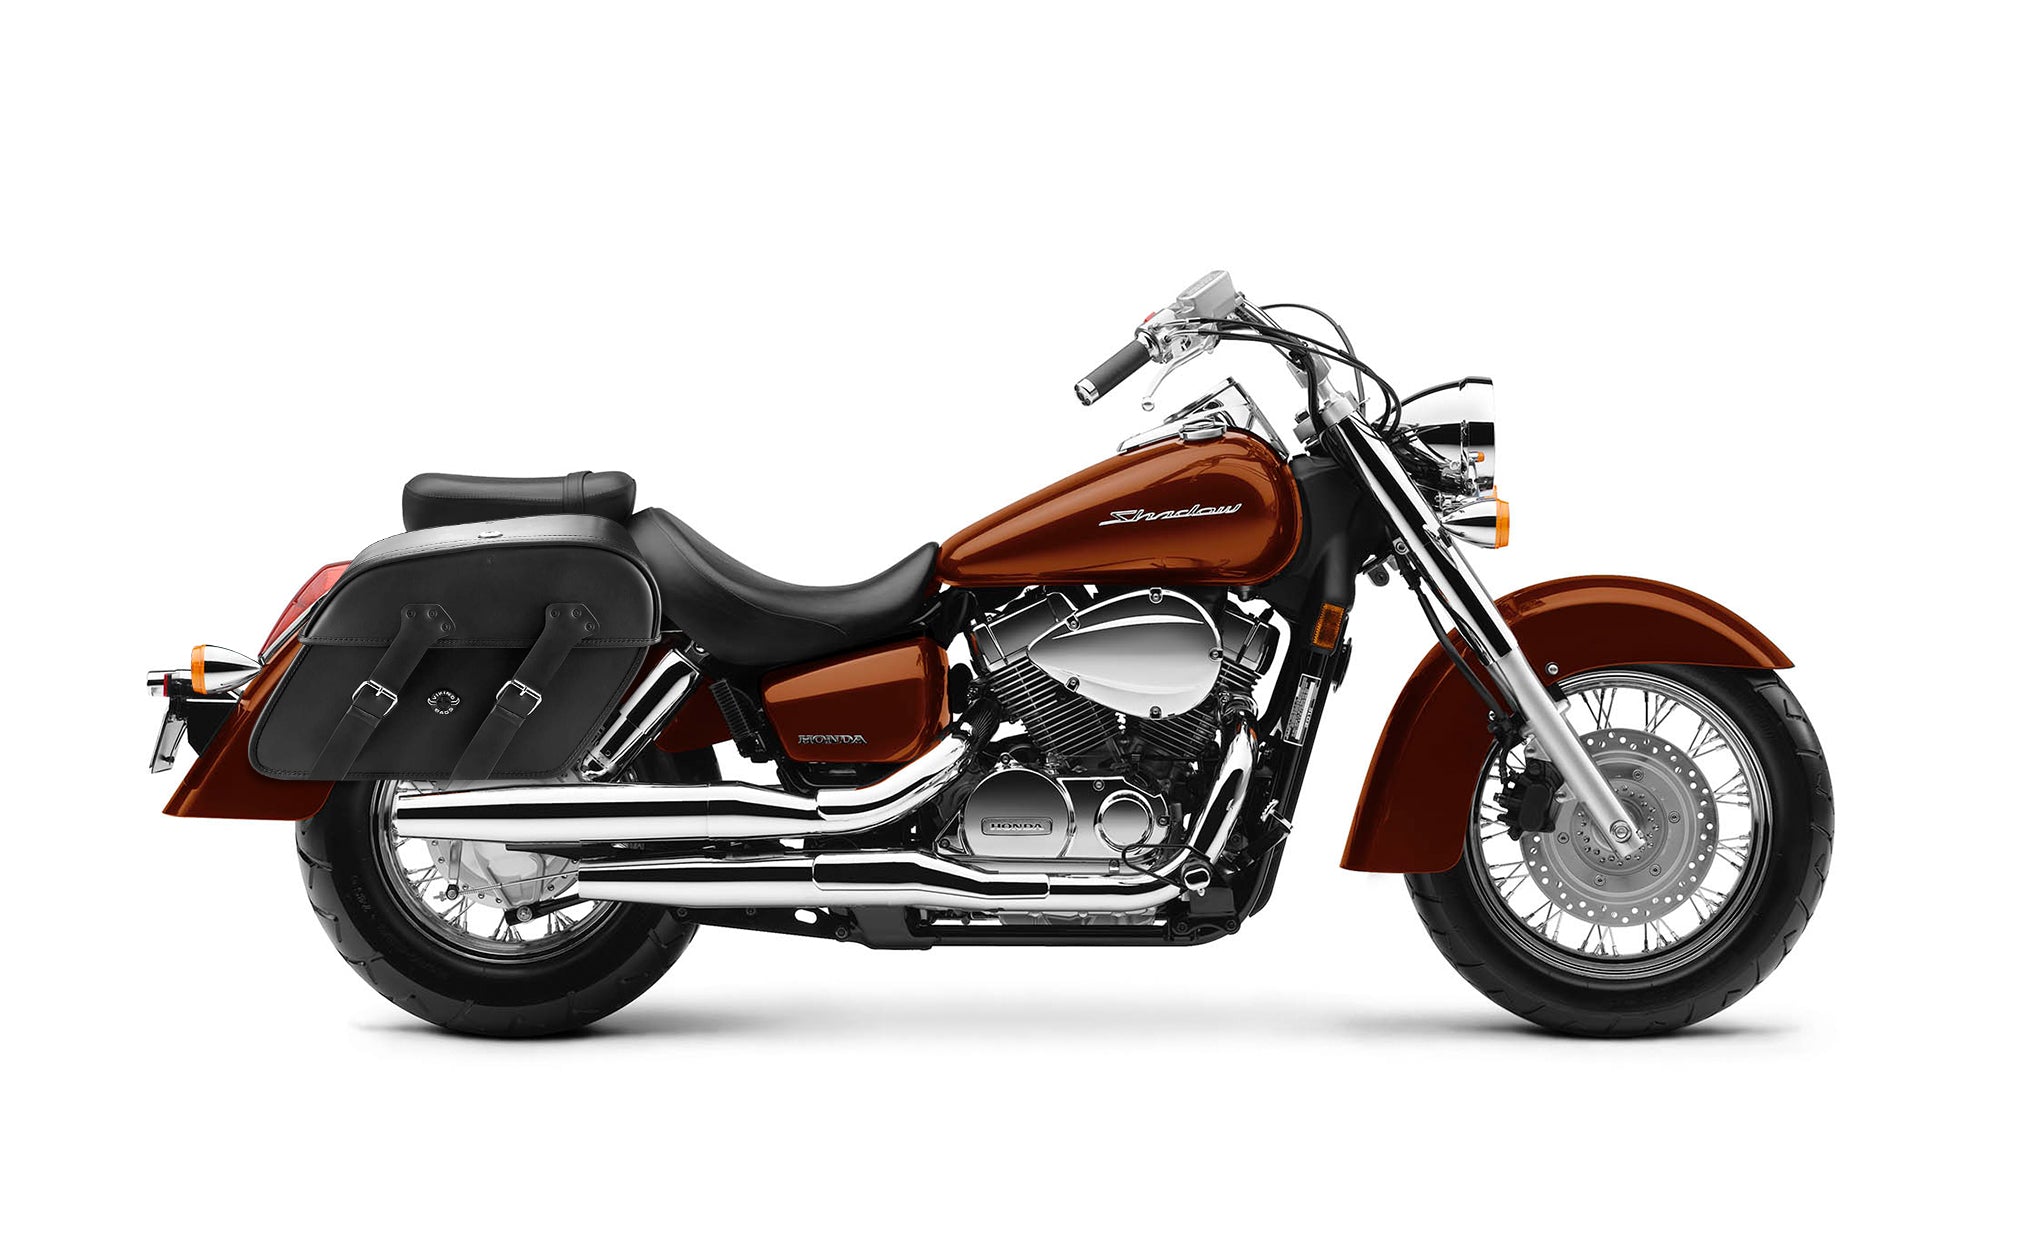 Viking Raven Extra Large Honda Shadow 1100 Aero Shock Cut Out Leather Motorcycle Saddlebags on Bike Photo @expand